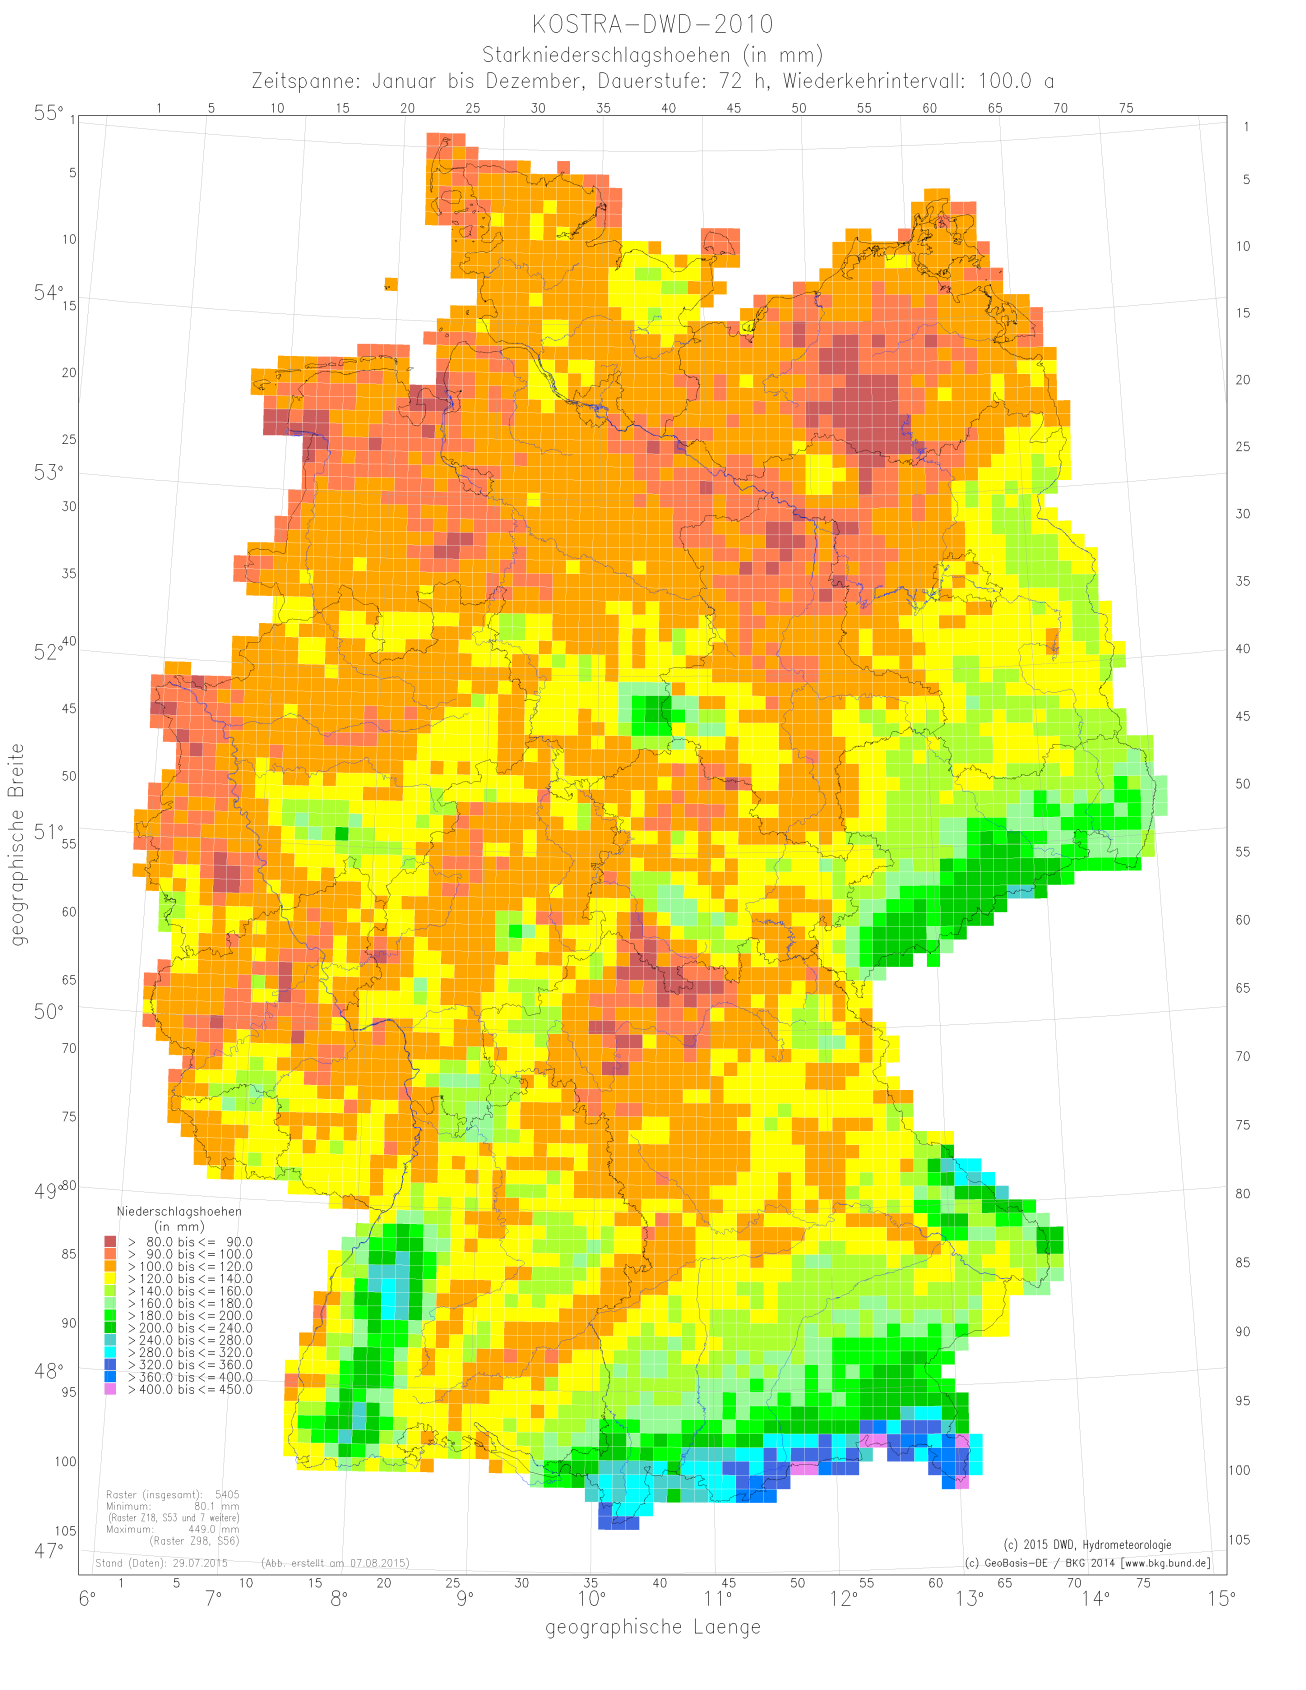 Abb. 6: Räumliche Verteilung der Starkniederschlagshöhe (in mm) nach KOSTRA-DWD-2010 für die Dauerstufe D = 72 h und